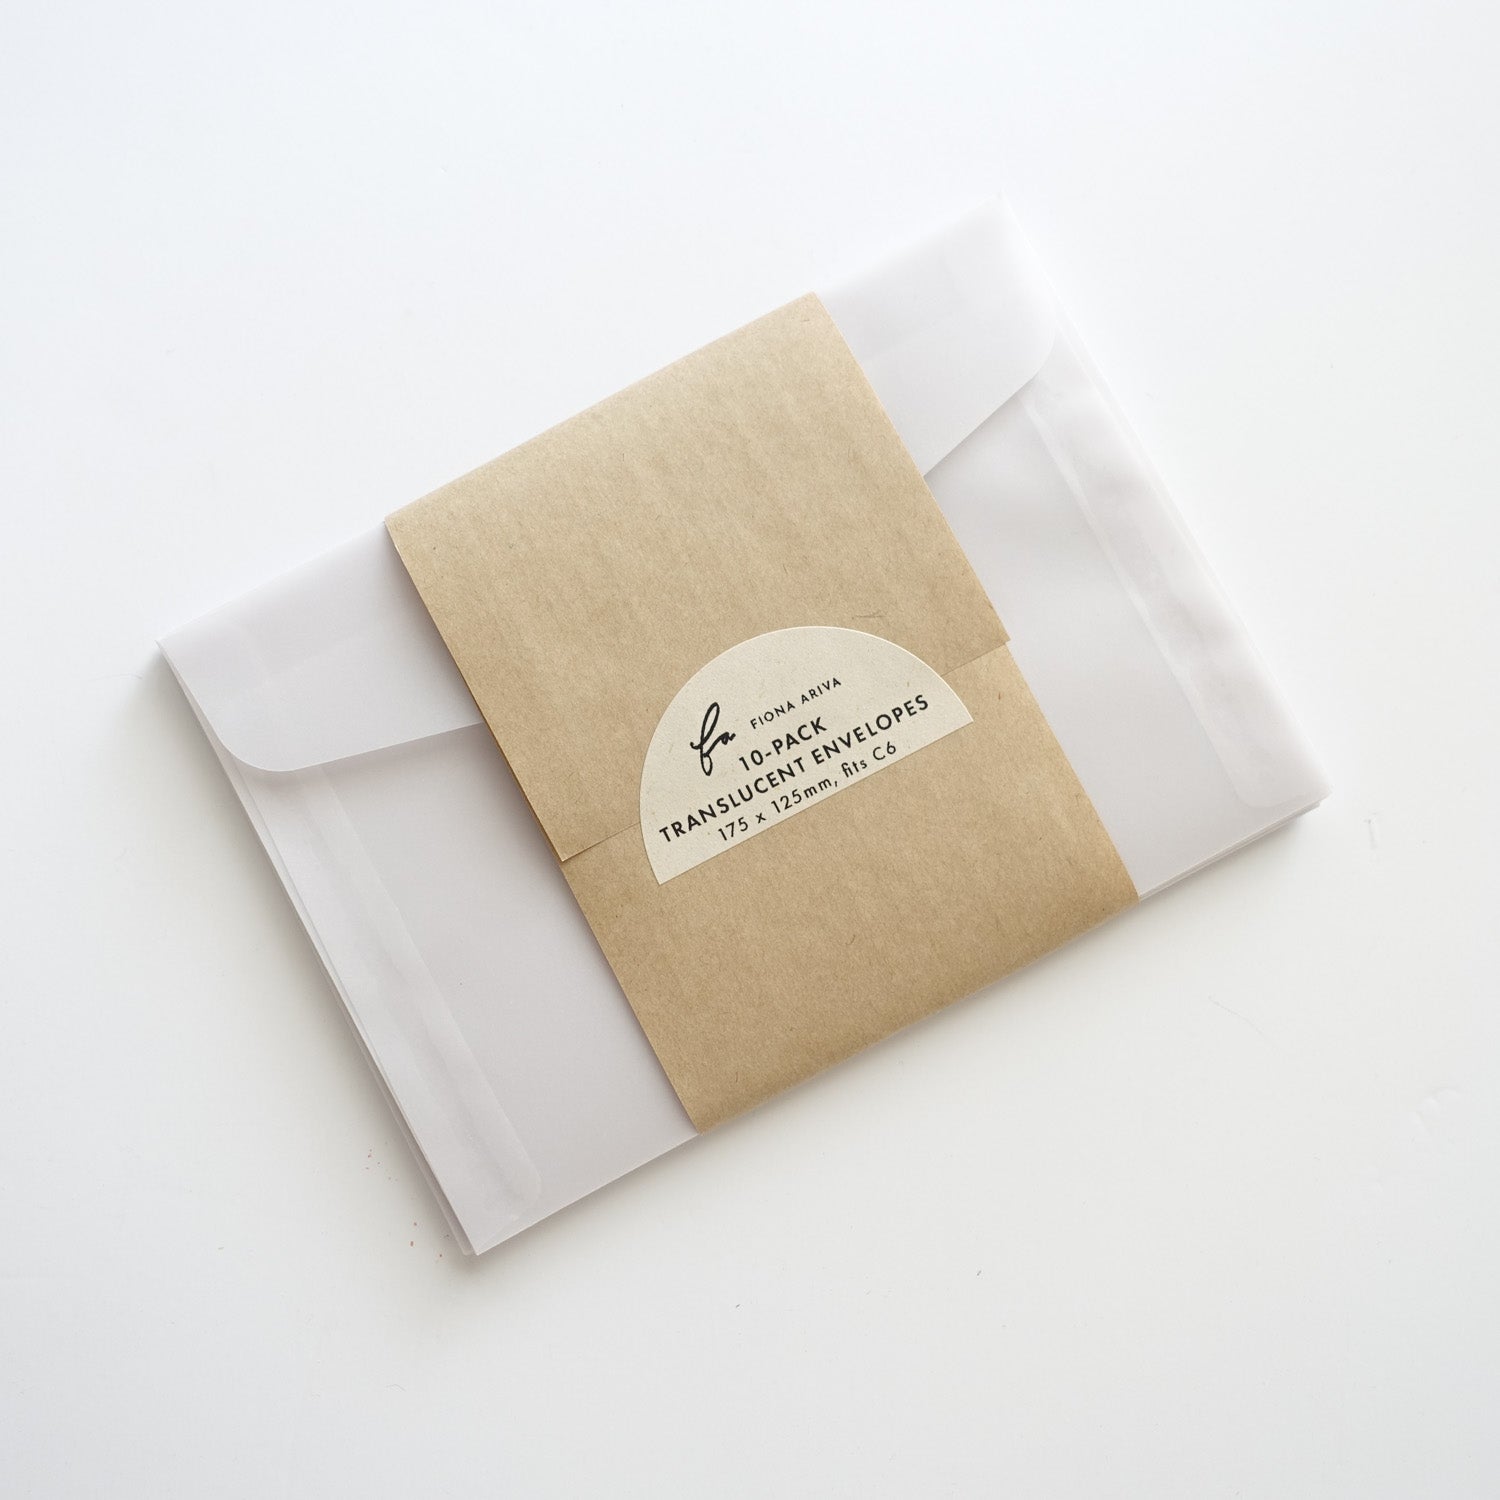 translucent clear vellum envelopes